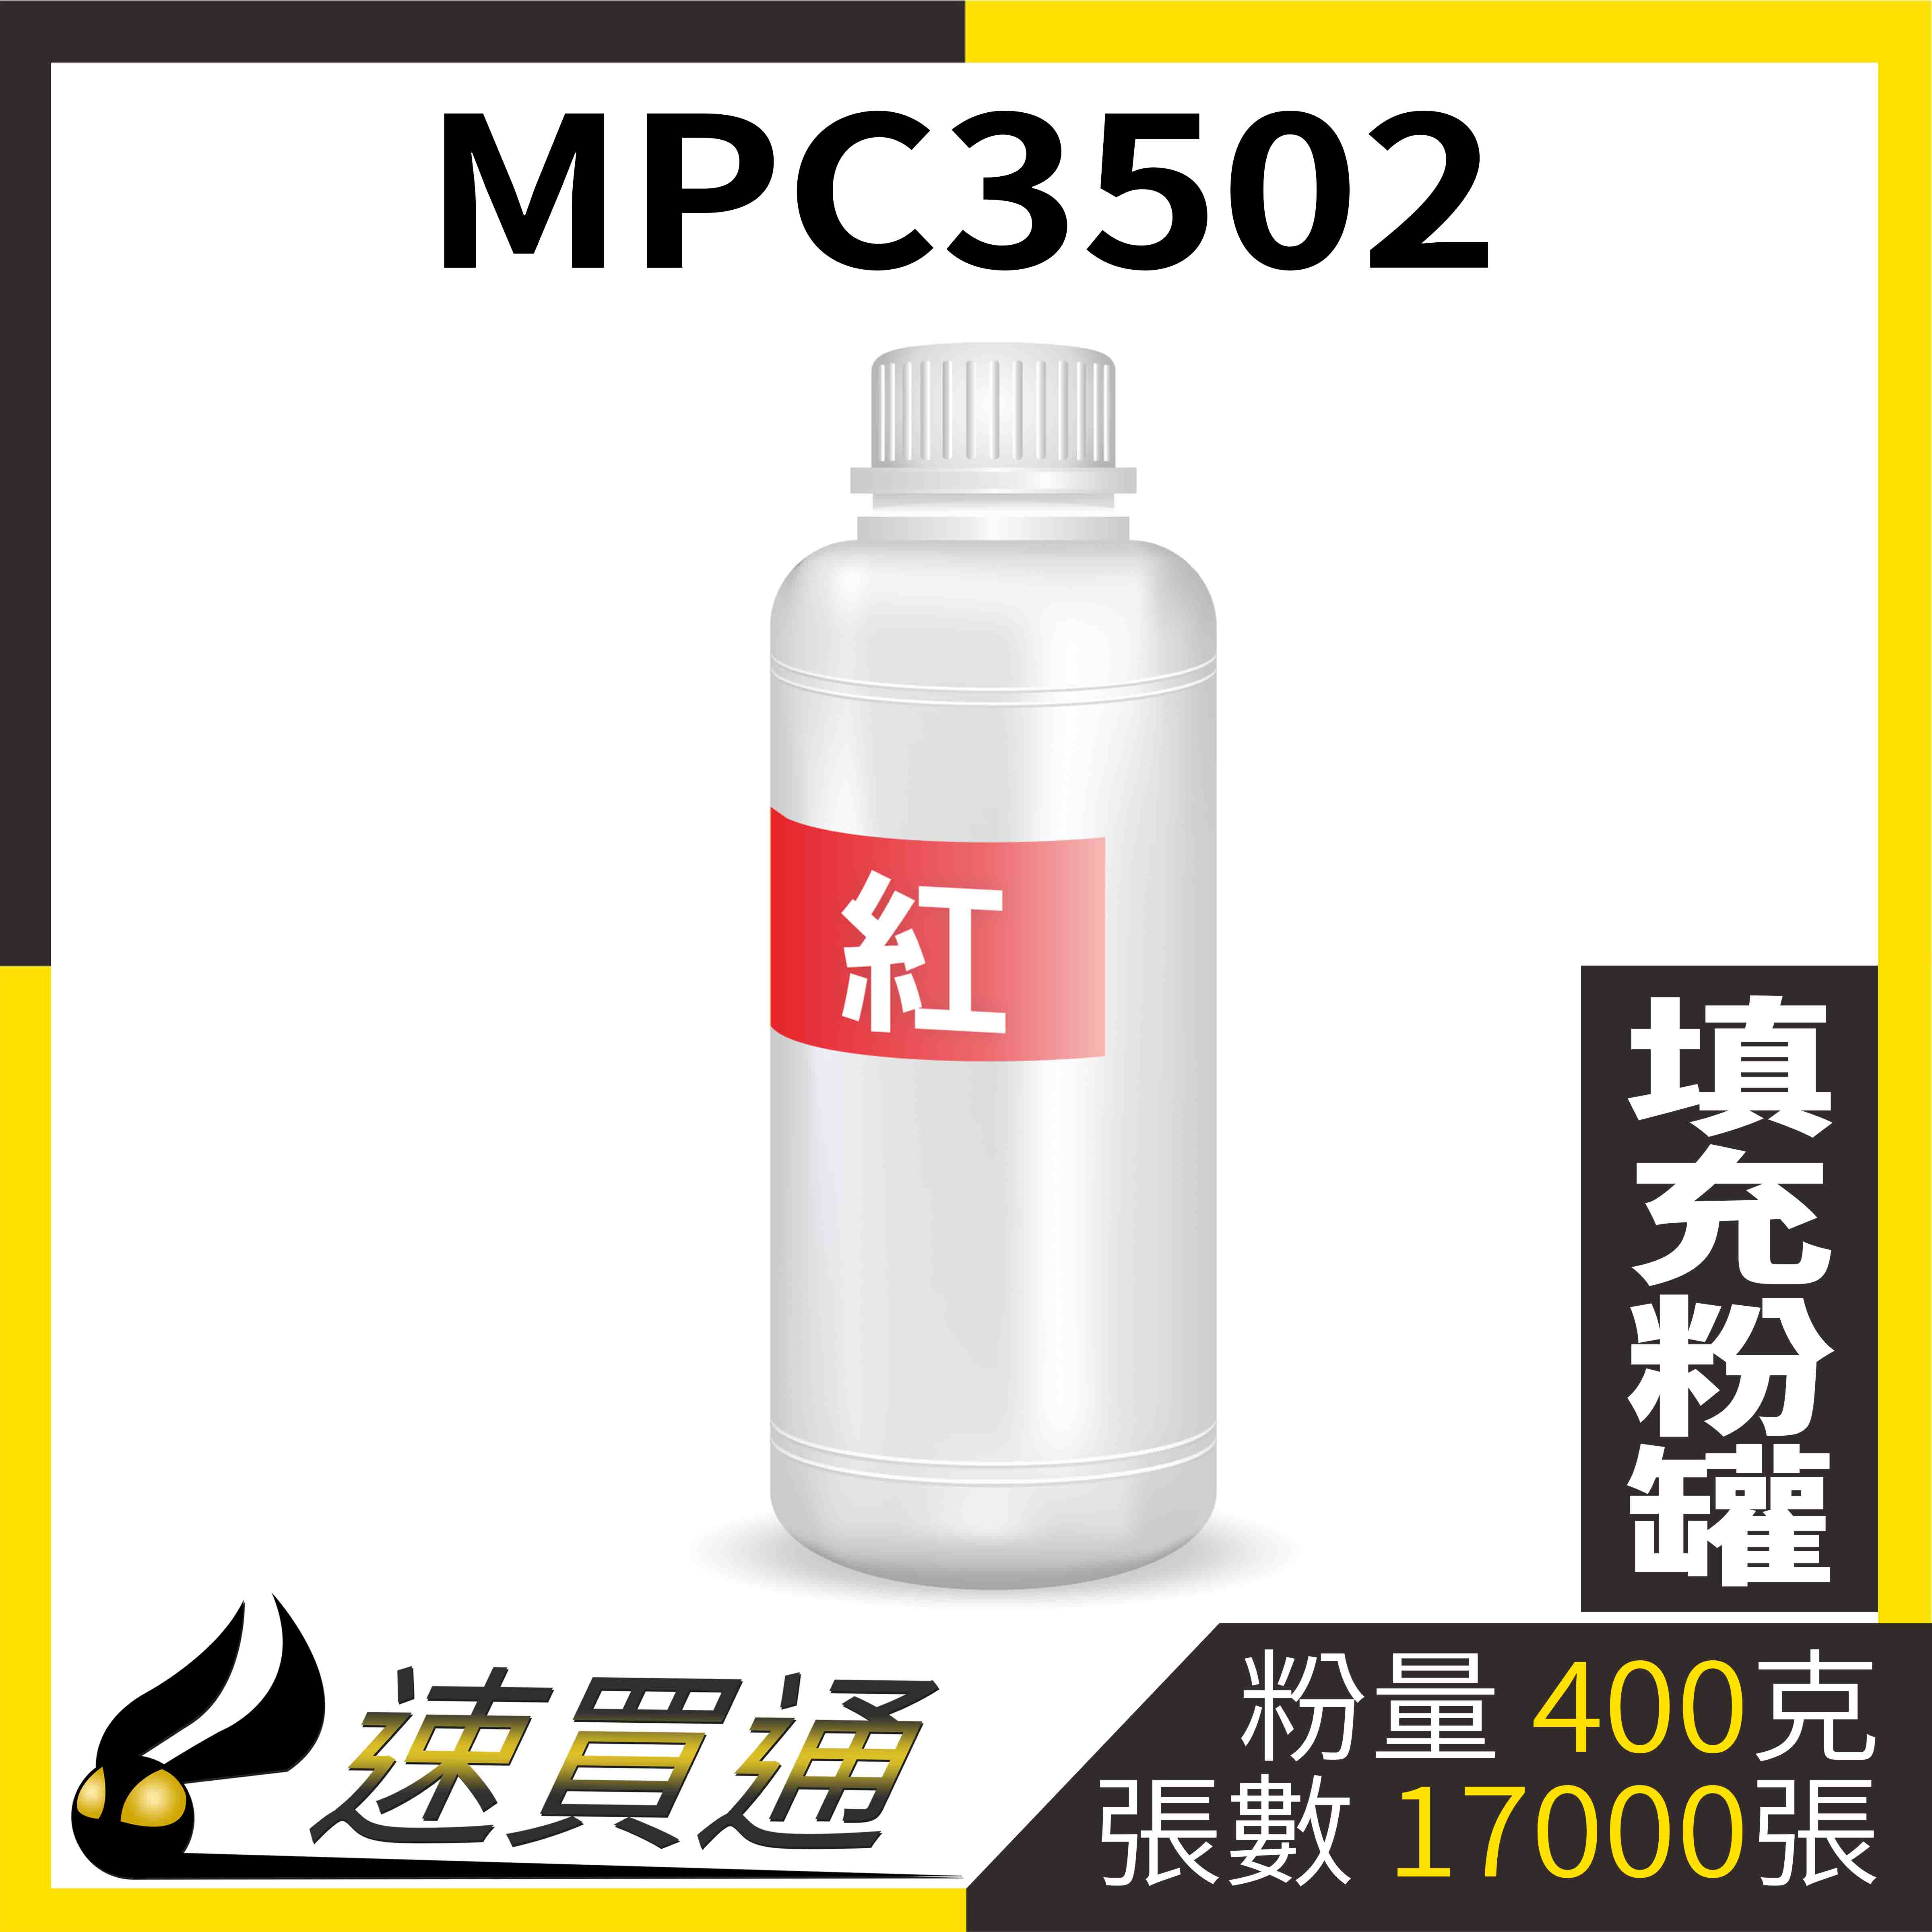 【速買通】RICOH MPC3502 紅 填充式碳粉罐